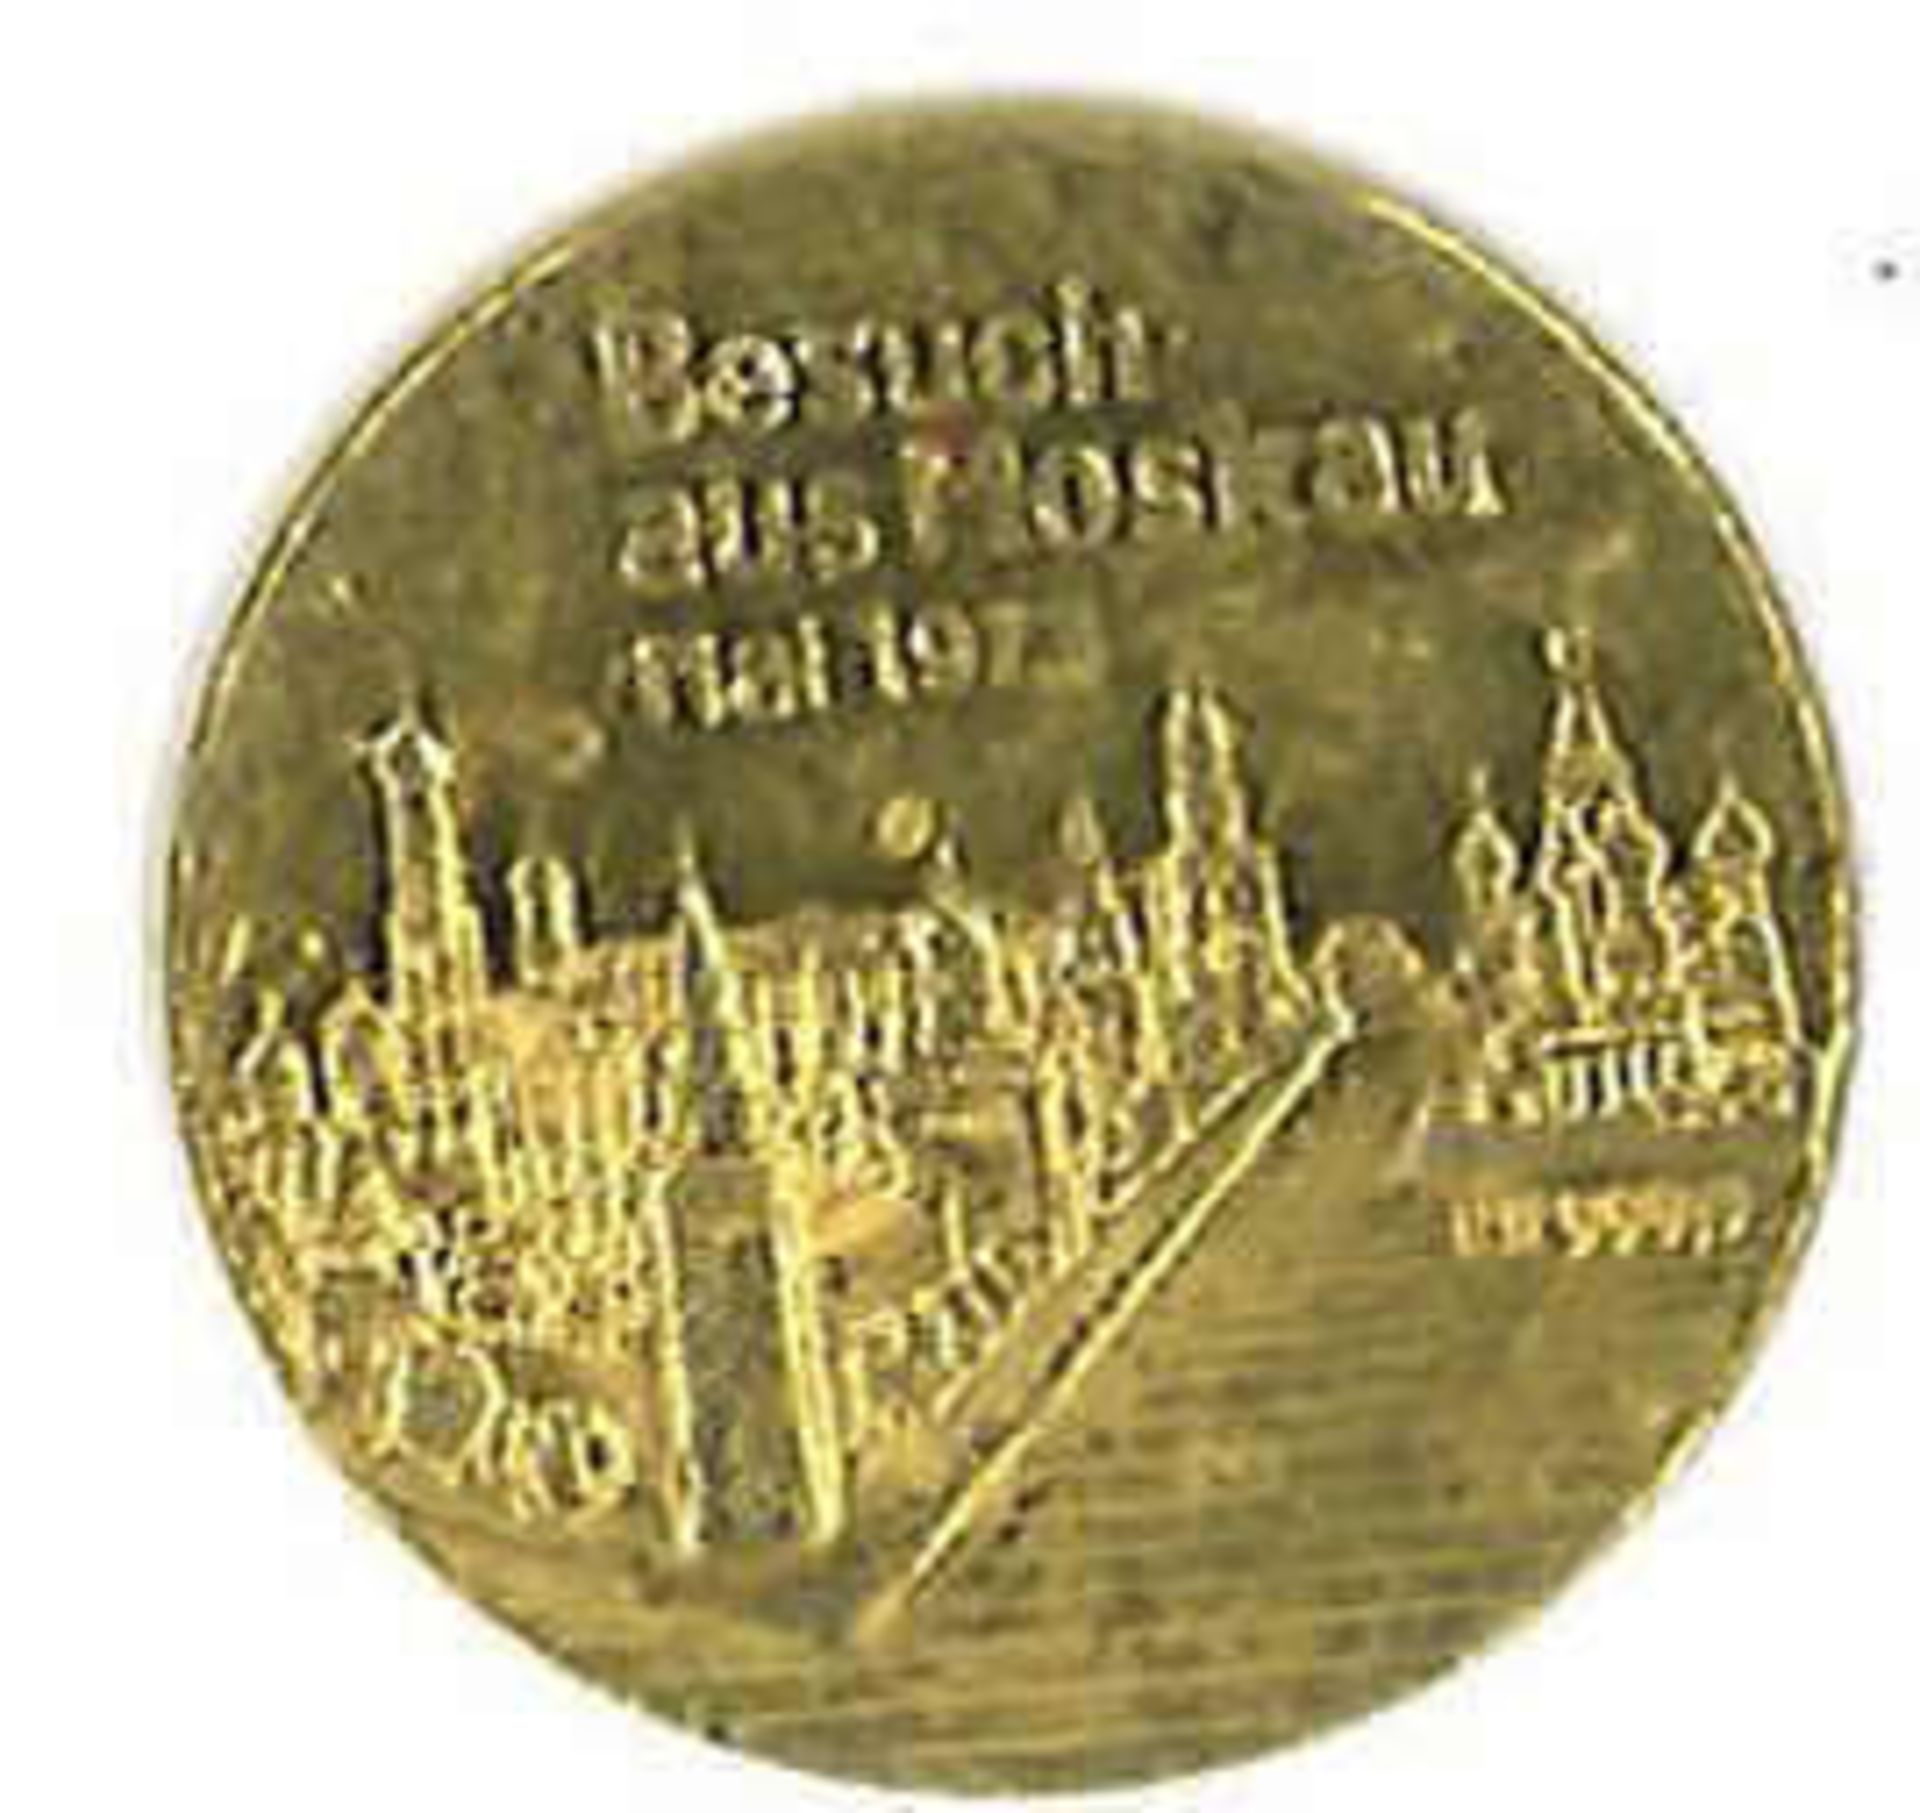 999er Gold Medaille "Besuch aus Moskau 1973", Gewicht ca. 3g